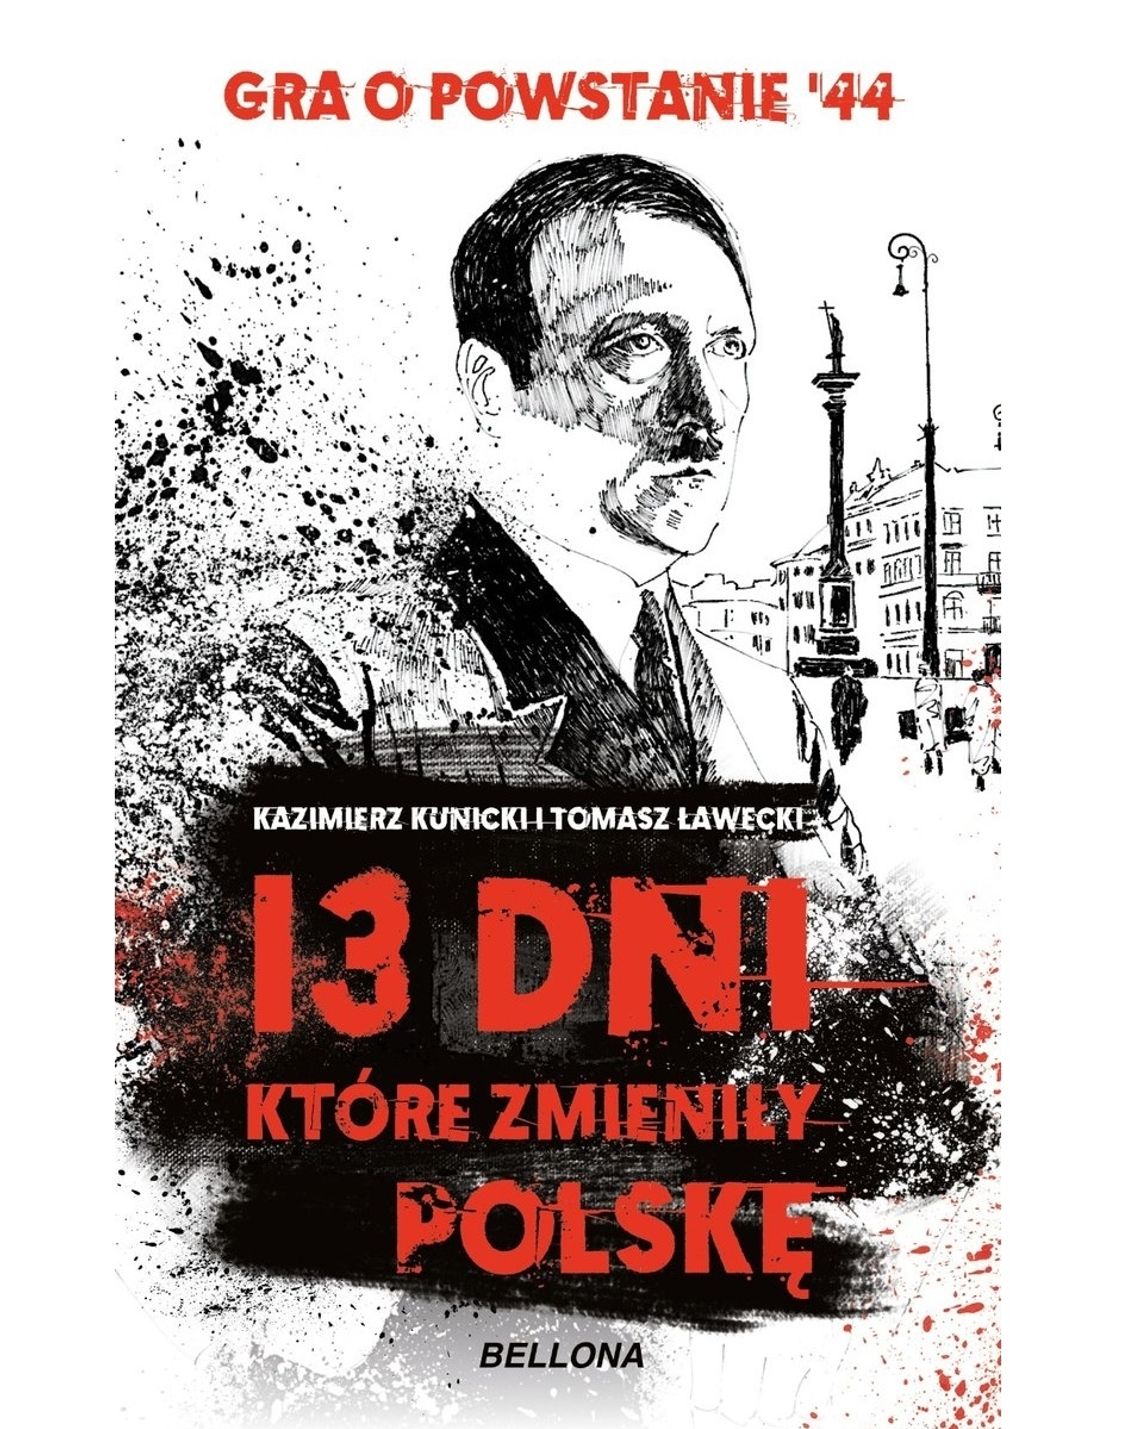 "3 dni, które zmieniły Polskę" - Kazimierz Kunicki i Tomasz Ławecki